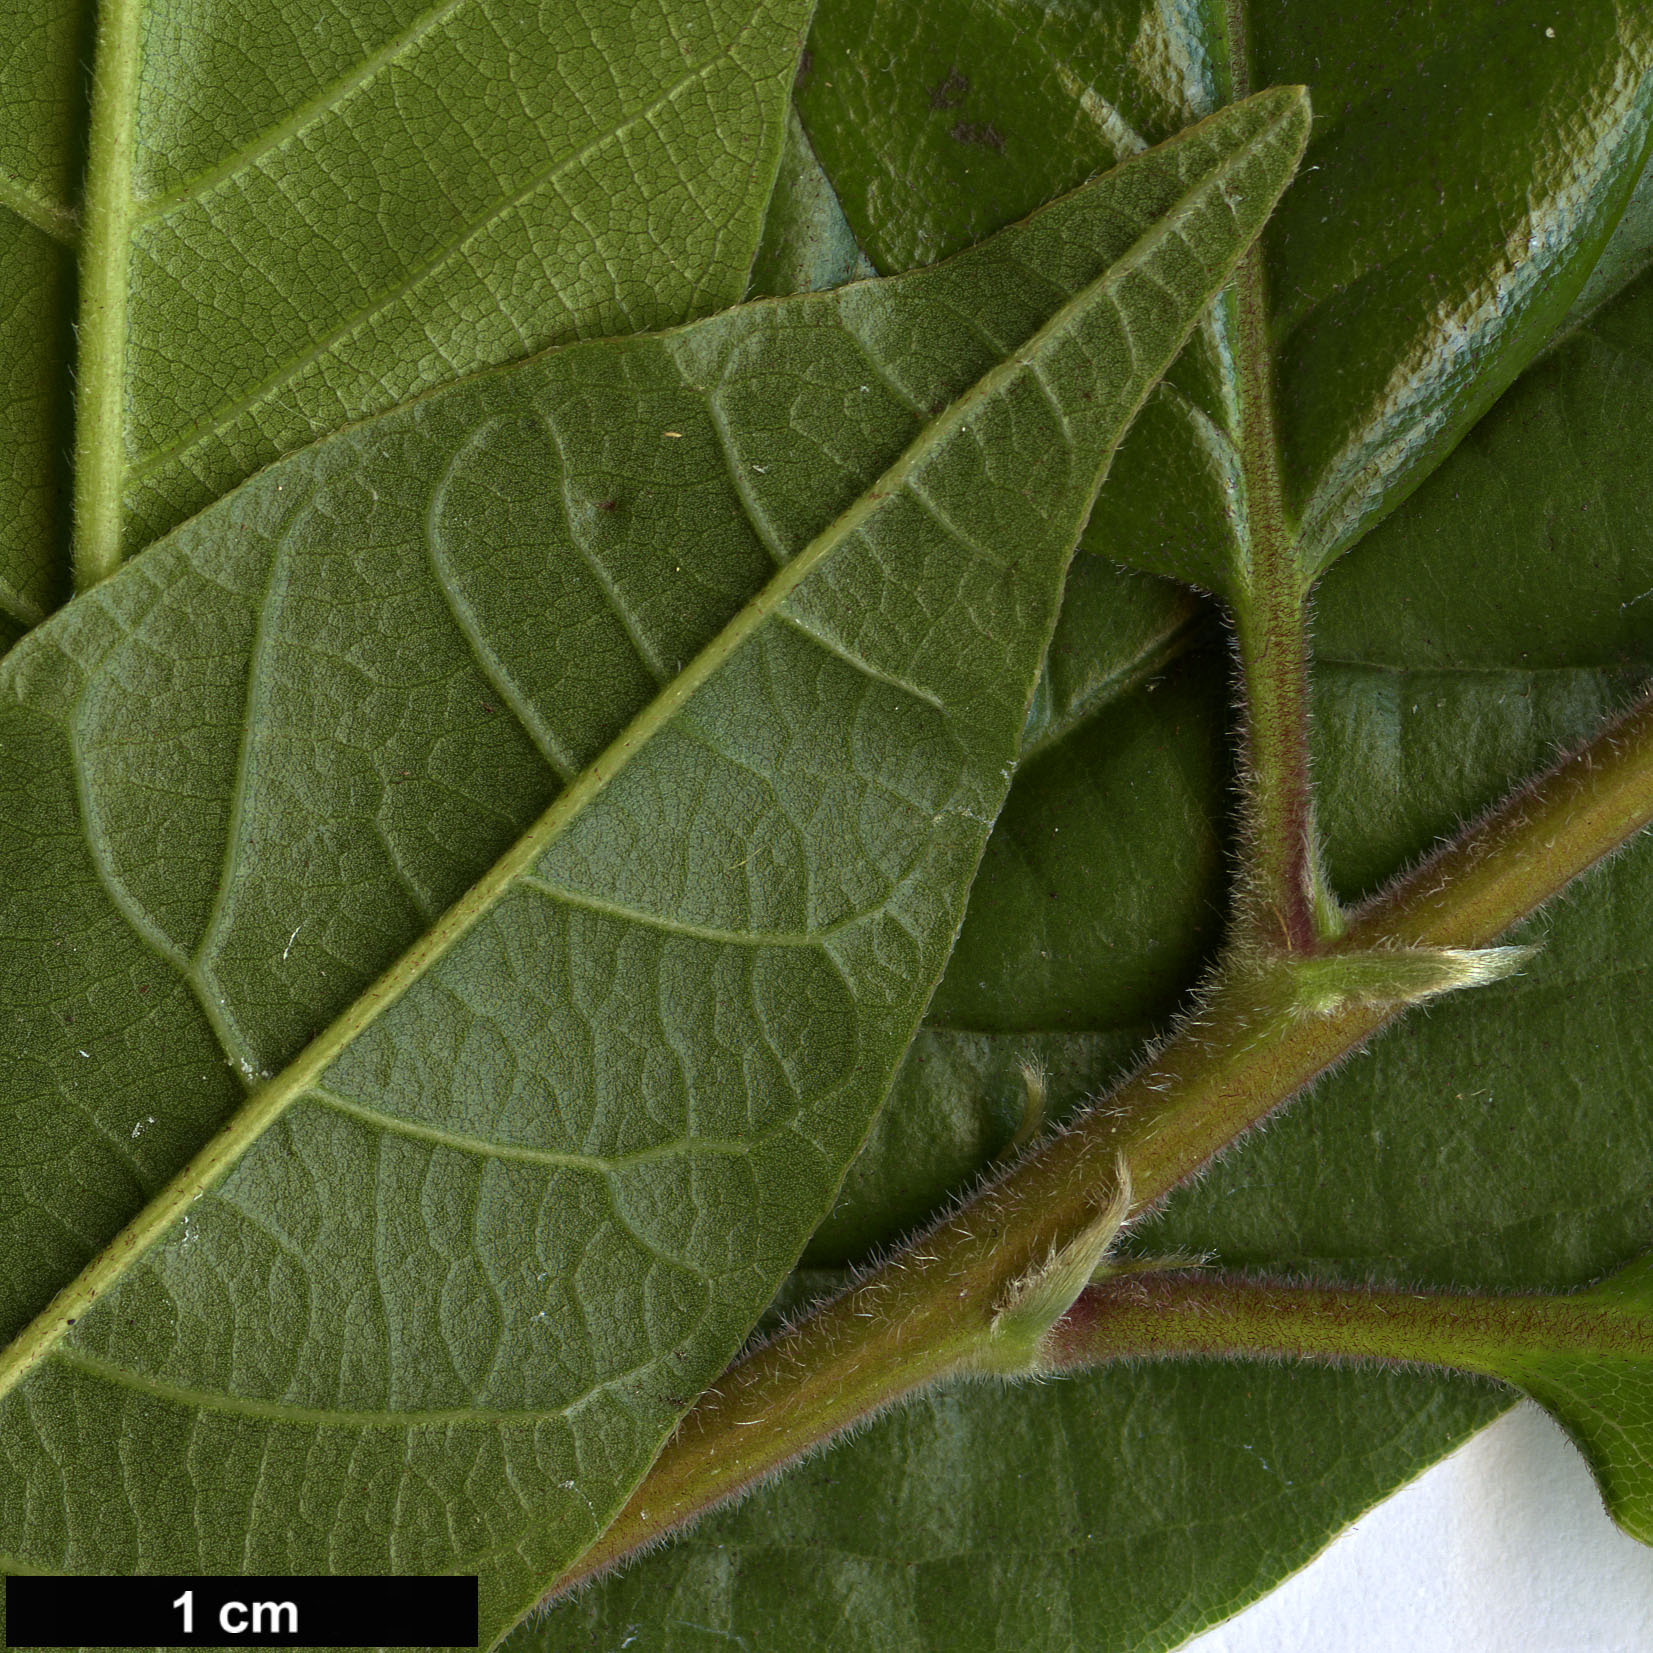 High resolution image: Family: Fagaceae - Genus: Lithocarpus - Taxon: quercifolius